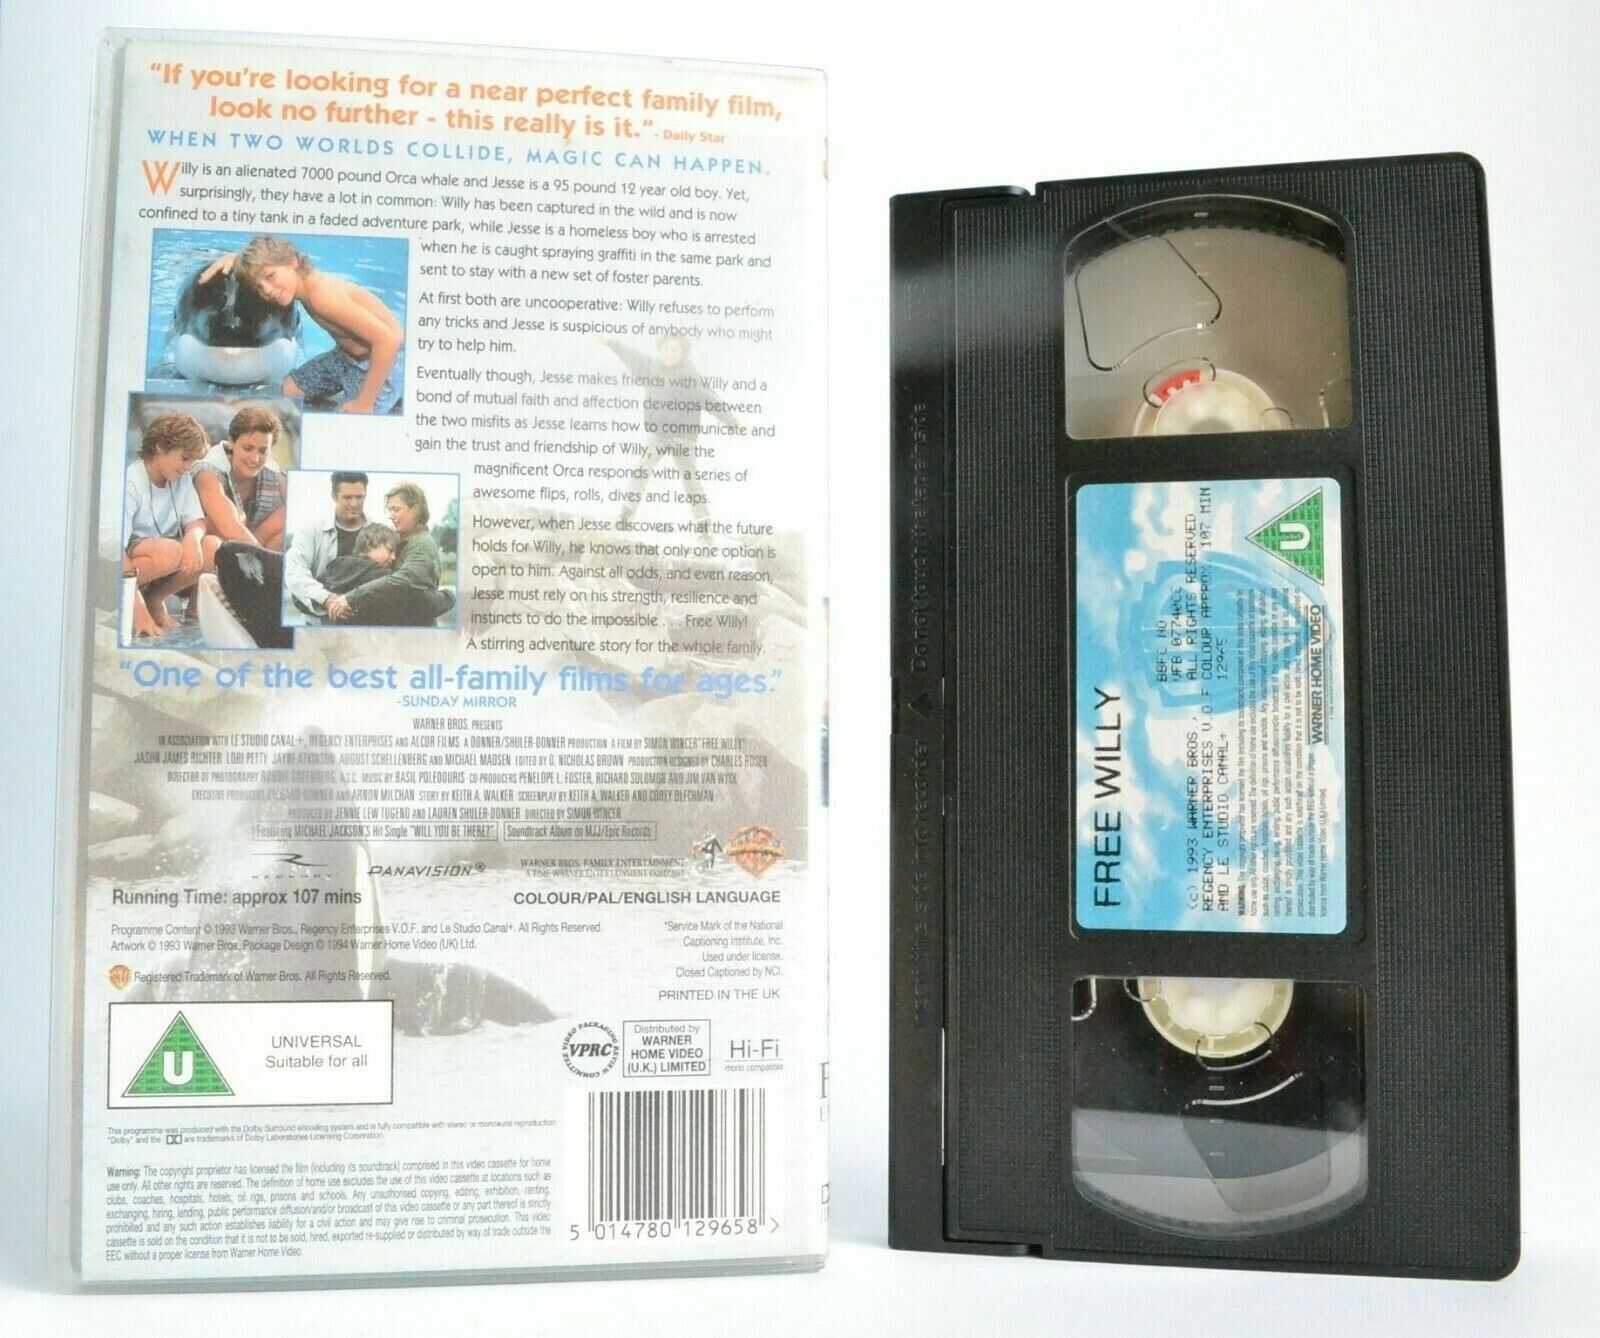 Free Willy (1993) - Family Drama -<Warner Bros>- Michael Madsen - Kids - Pal VHS-